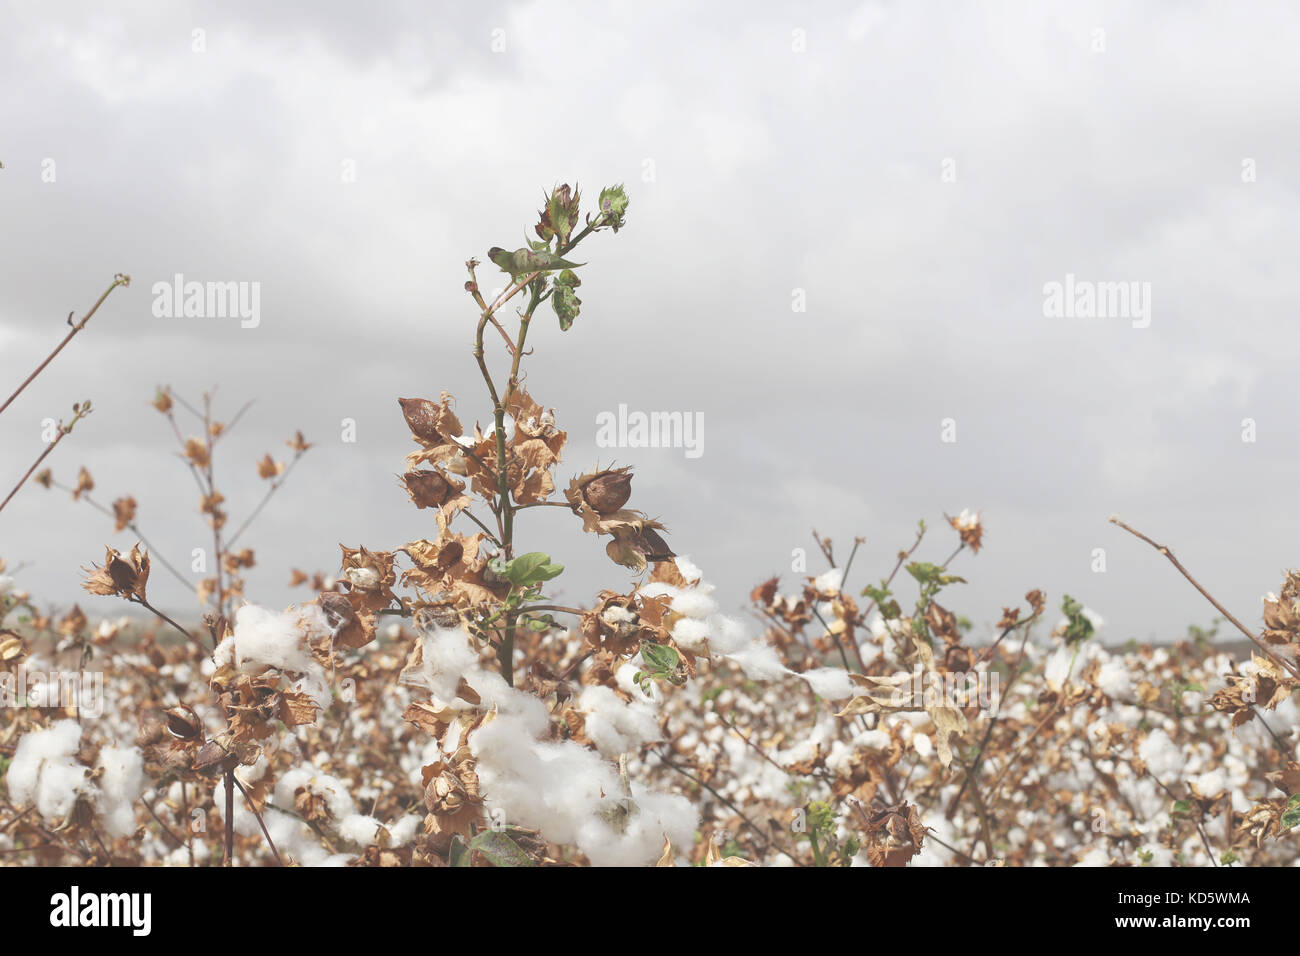 Baumwolle eingereicht grauer Himmel Hintergrund, die Jahreszeiten ändern fallen, das natürliche Wachstum Stockfoto